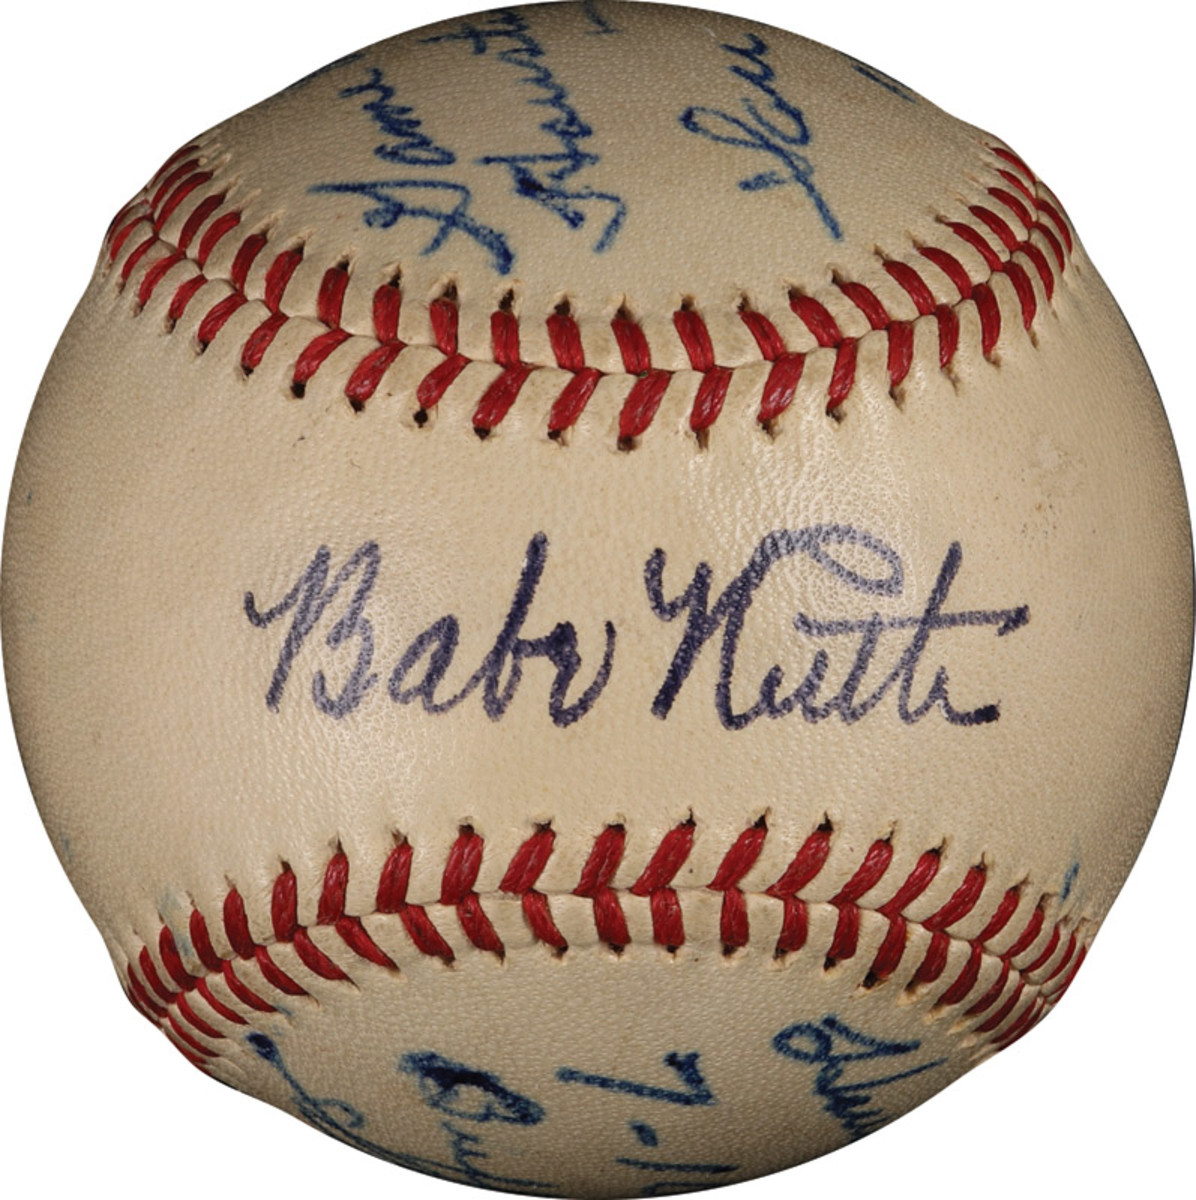 Highest Priced Babe Ruth Memorabilia